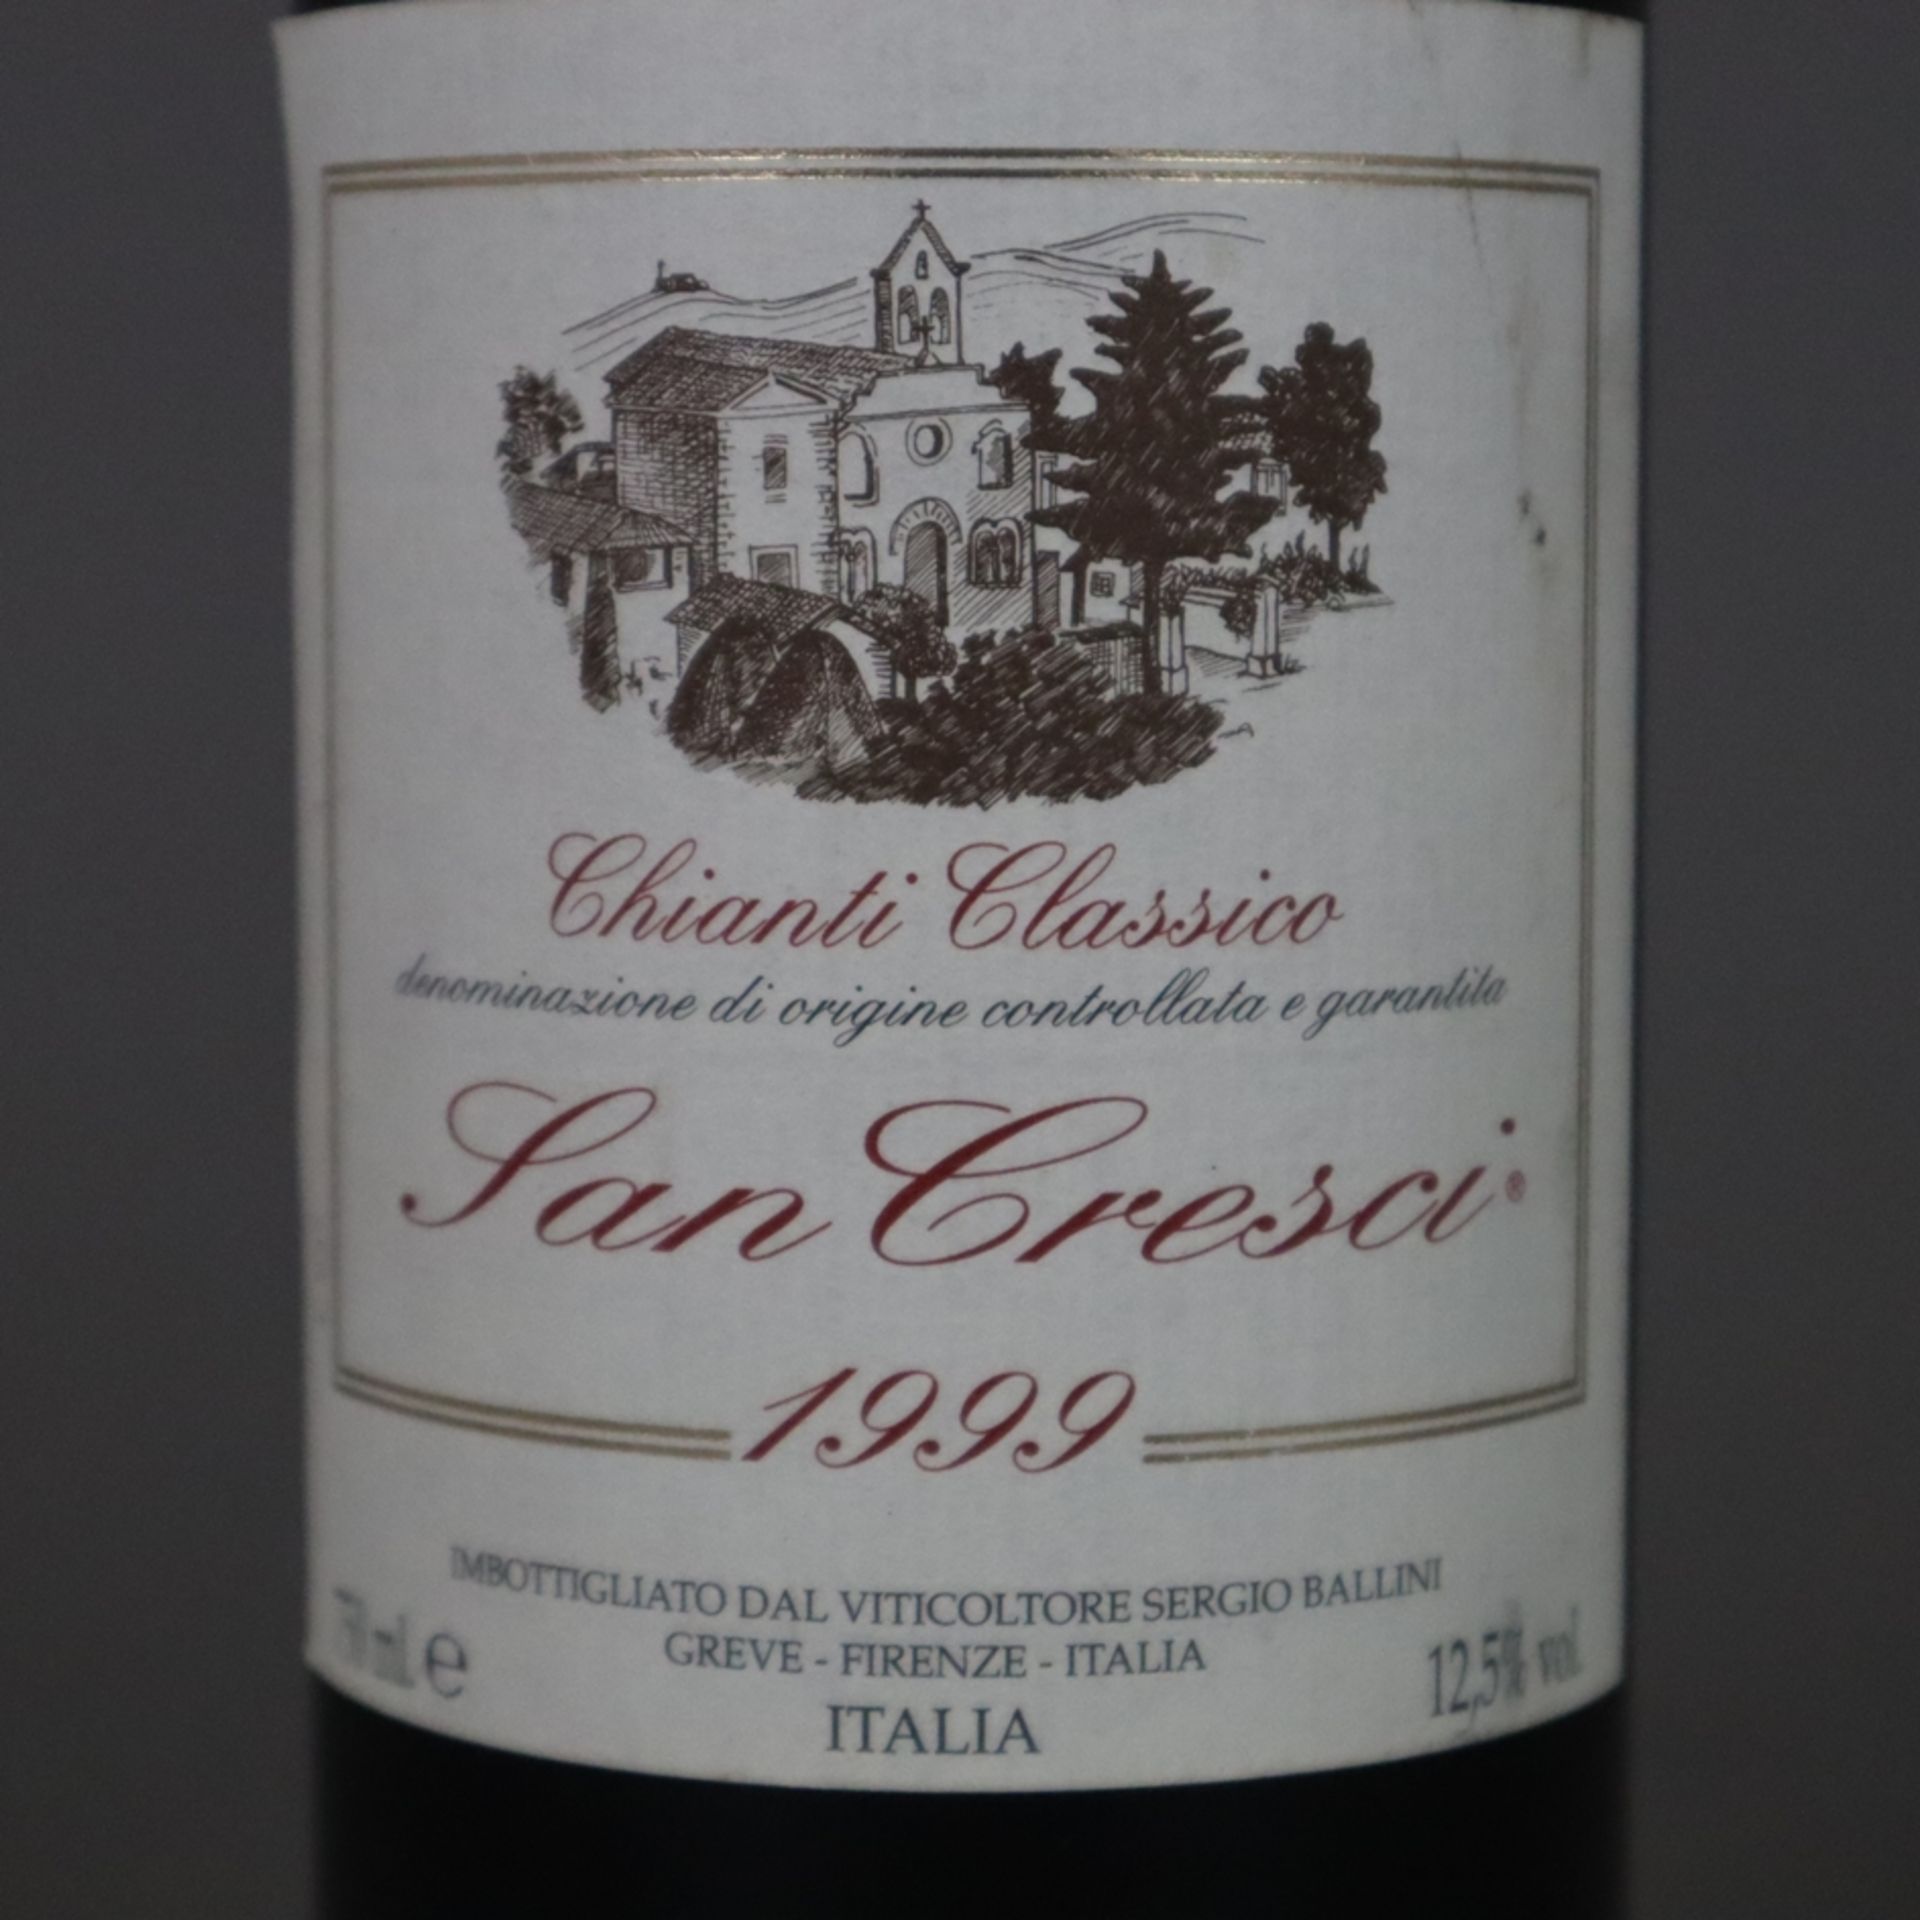 Wein - 1999 Podere San Cresci Chianti Classico, 750 ml, 12,5% - Image 4 of 5